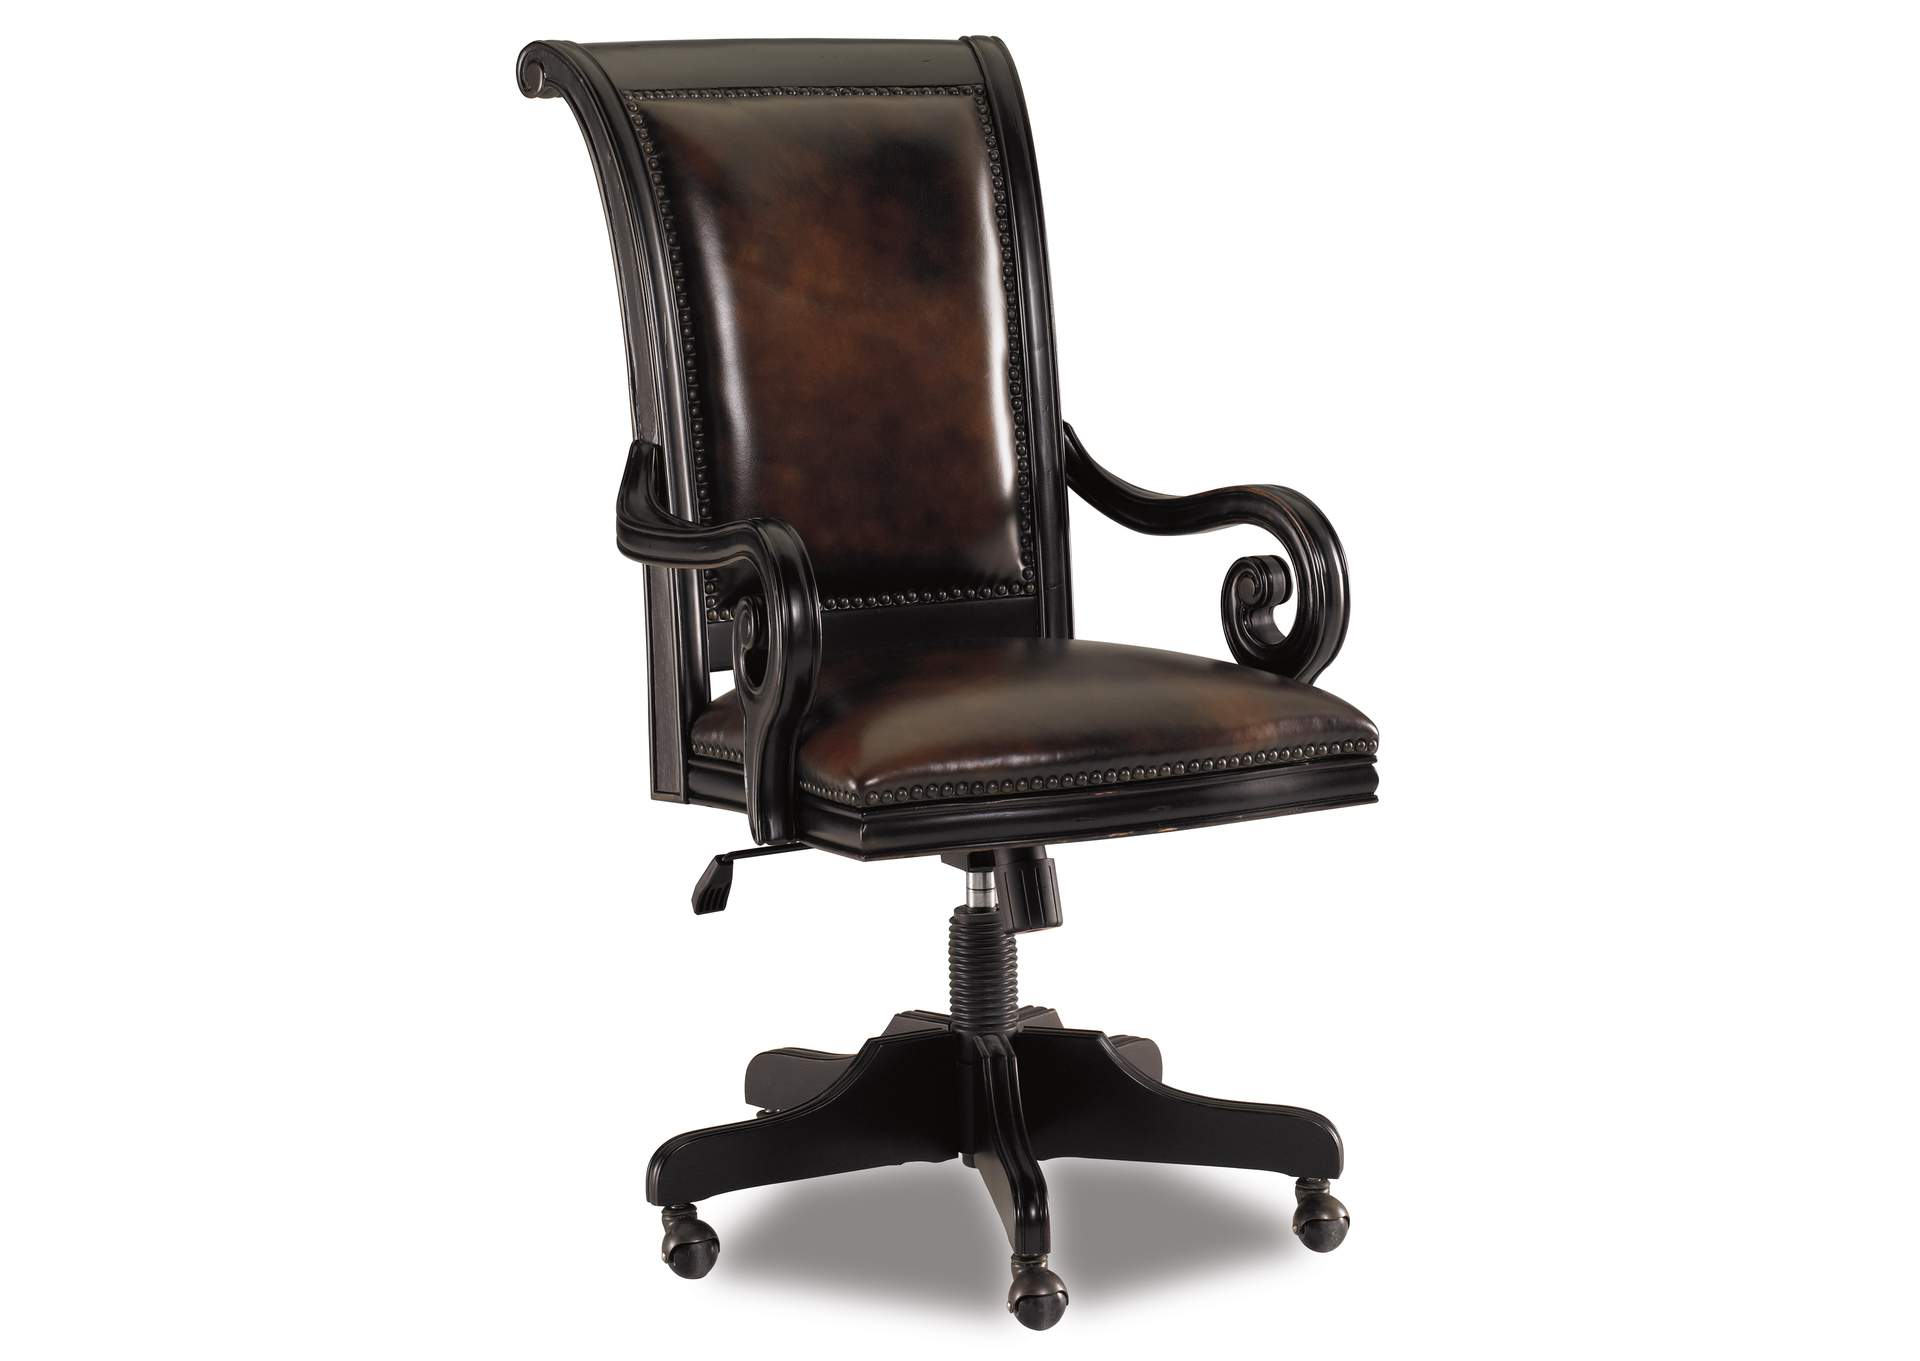 Telluride Tilt Swivel Chair,Hooker Furniture